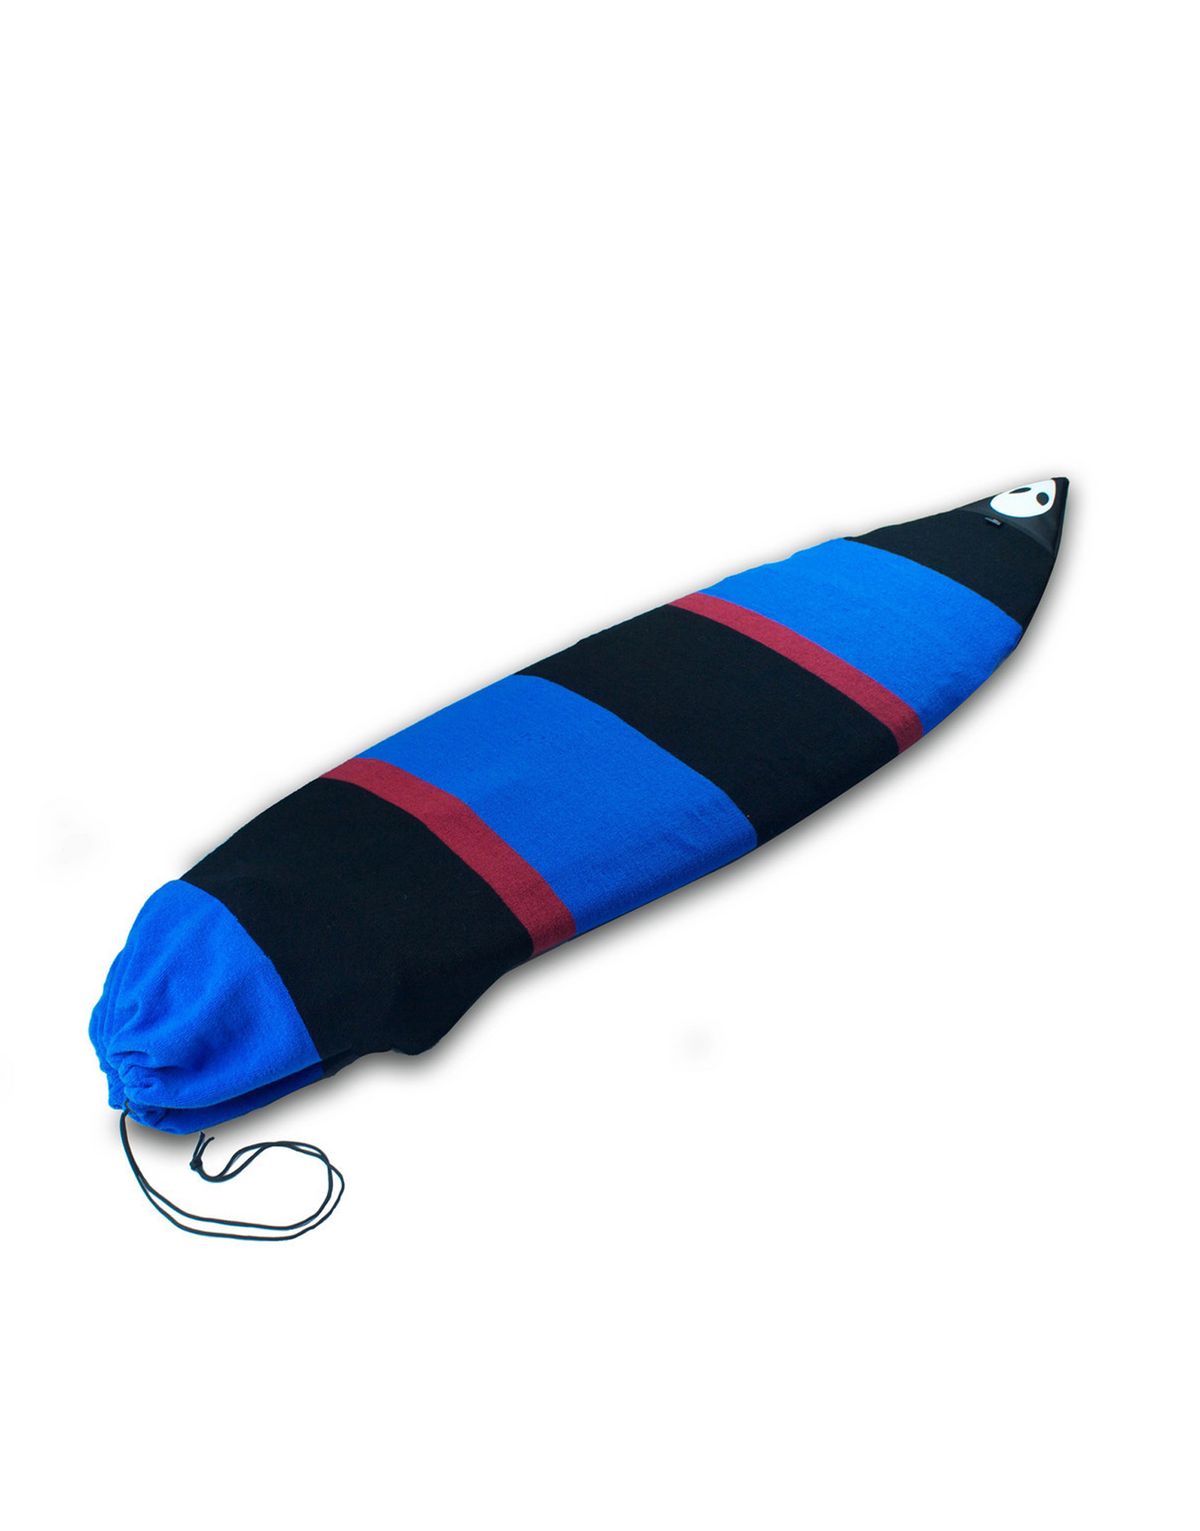 Lunasurf 6ft Surfboard Sock Black Red Blue